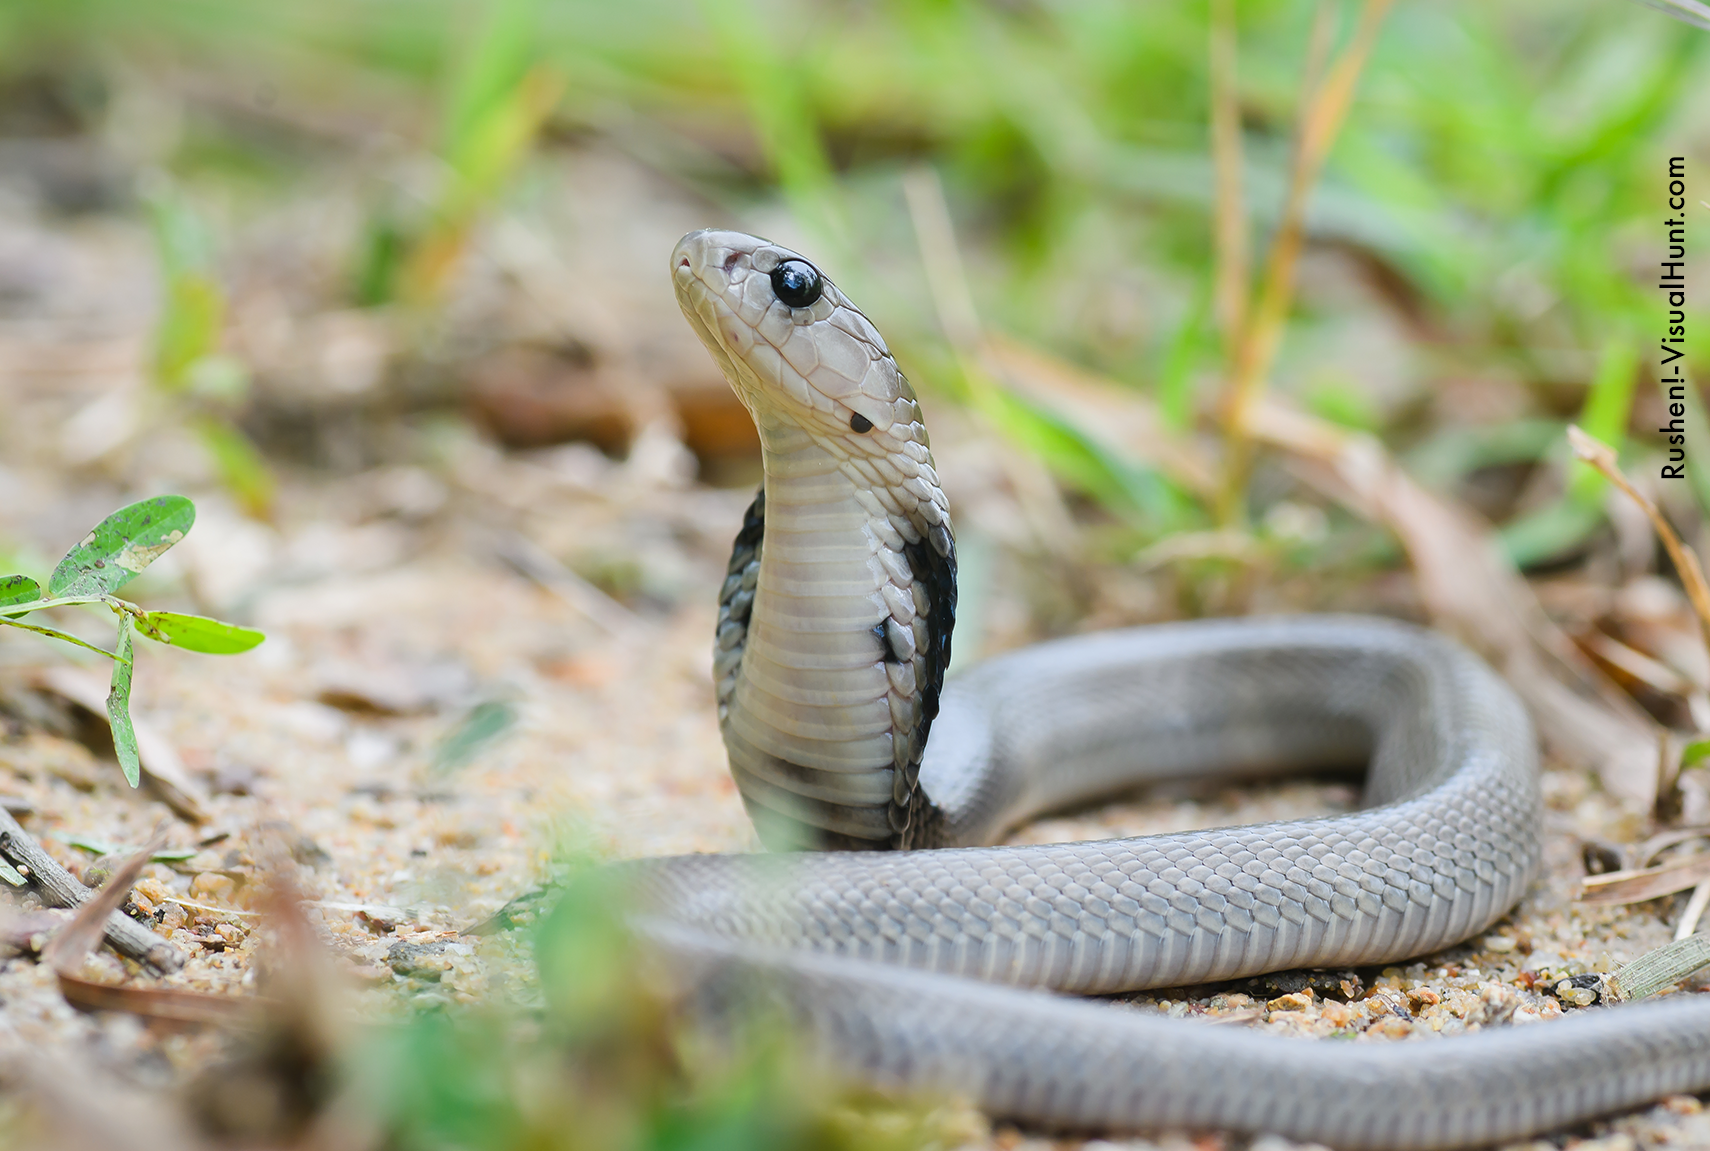 Fotos de Natureza: Cobra Naja  Fotos de cobras, Animais perigosos